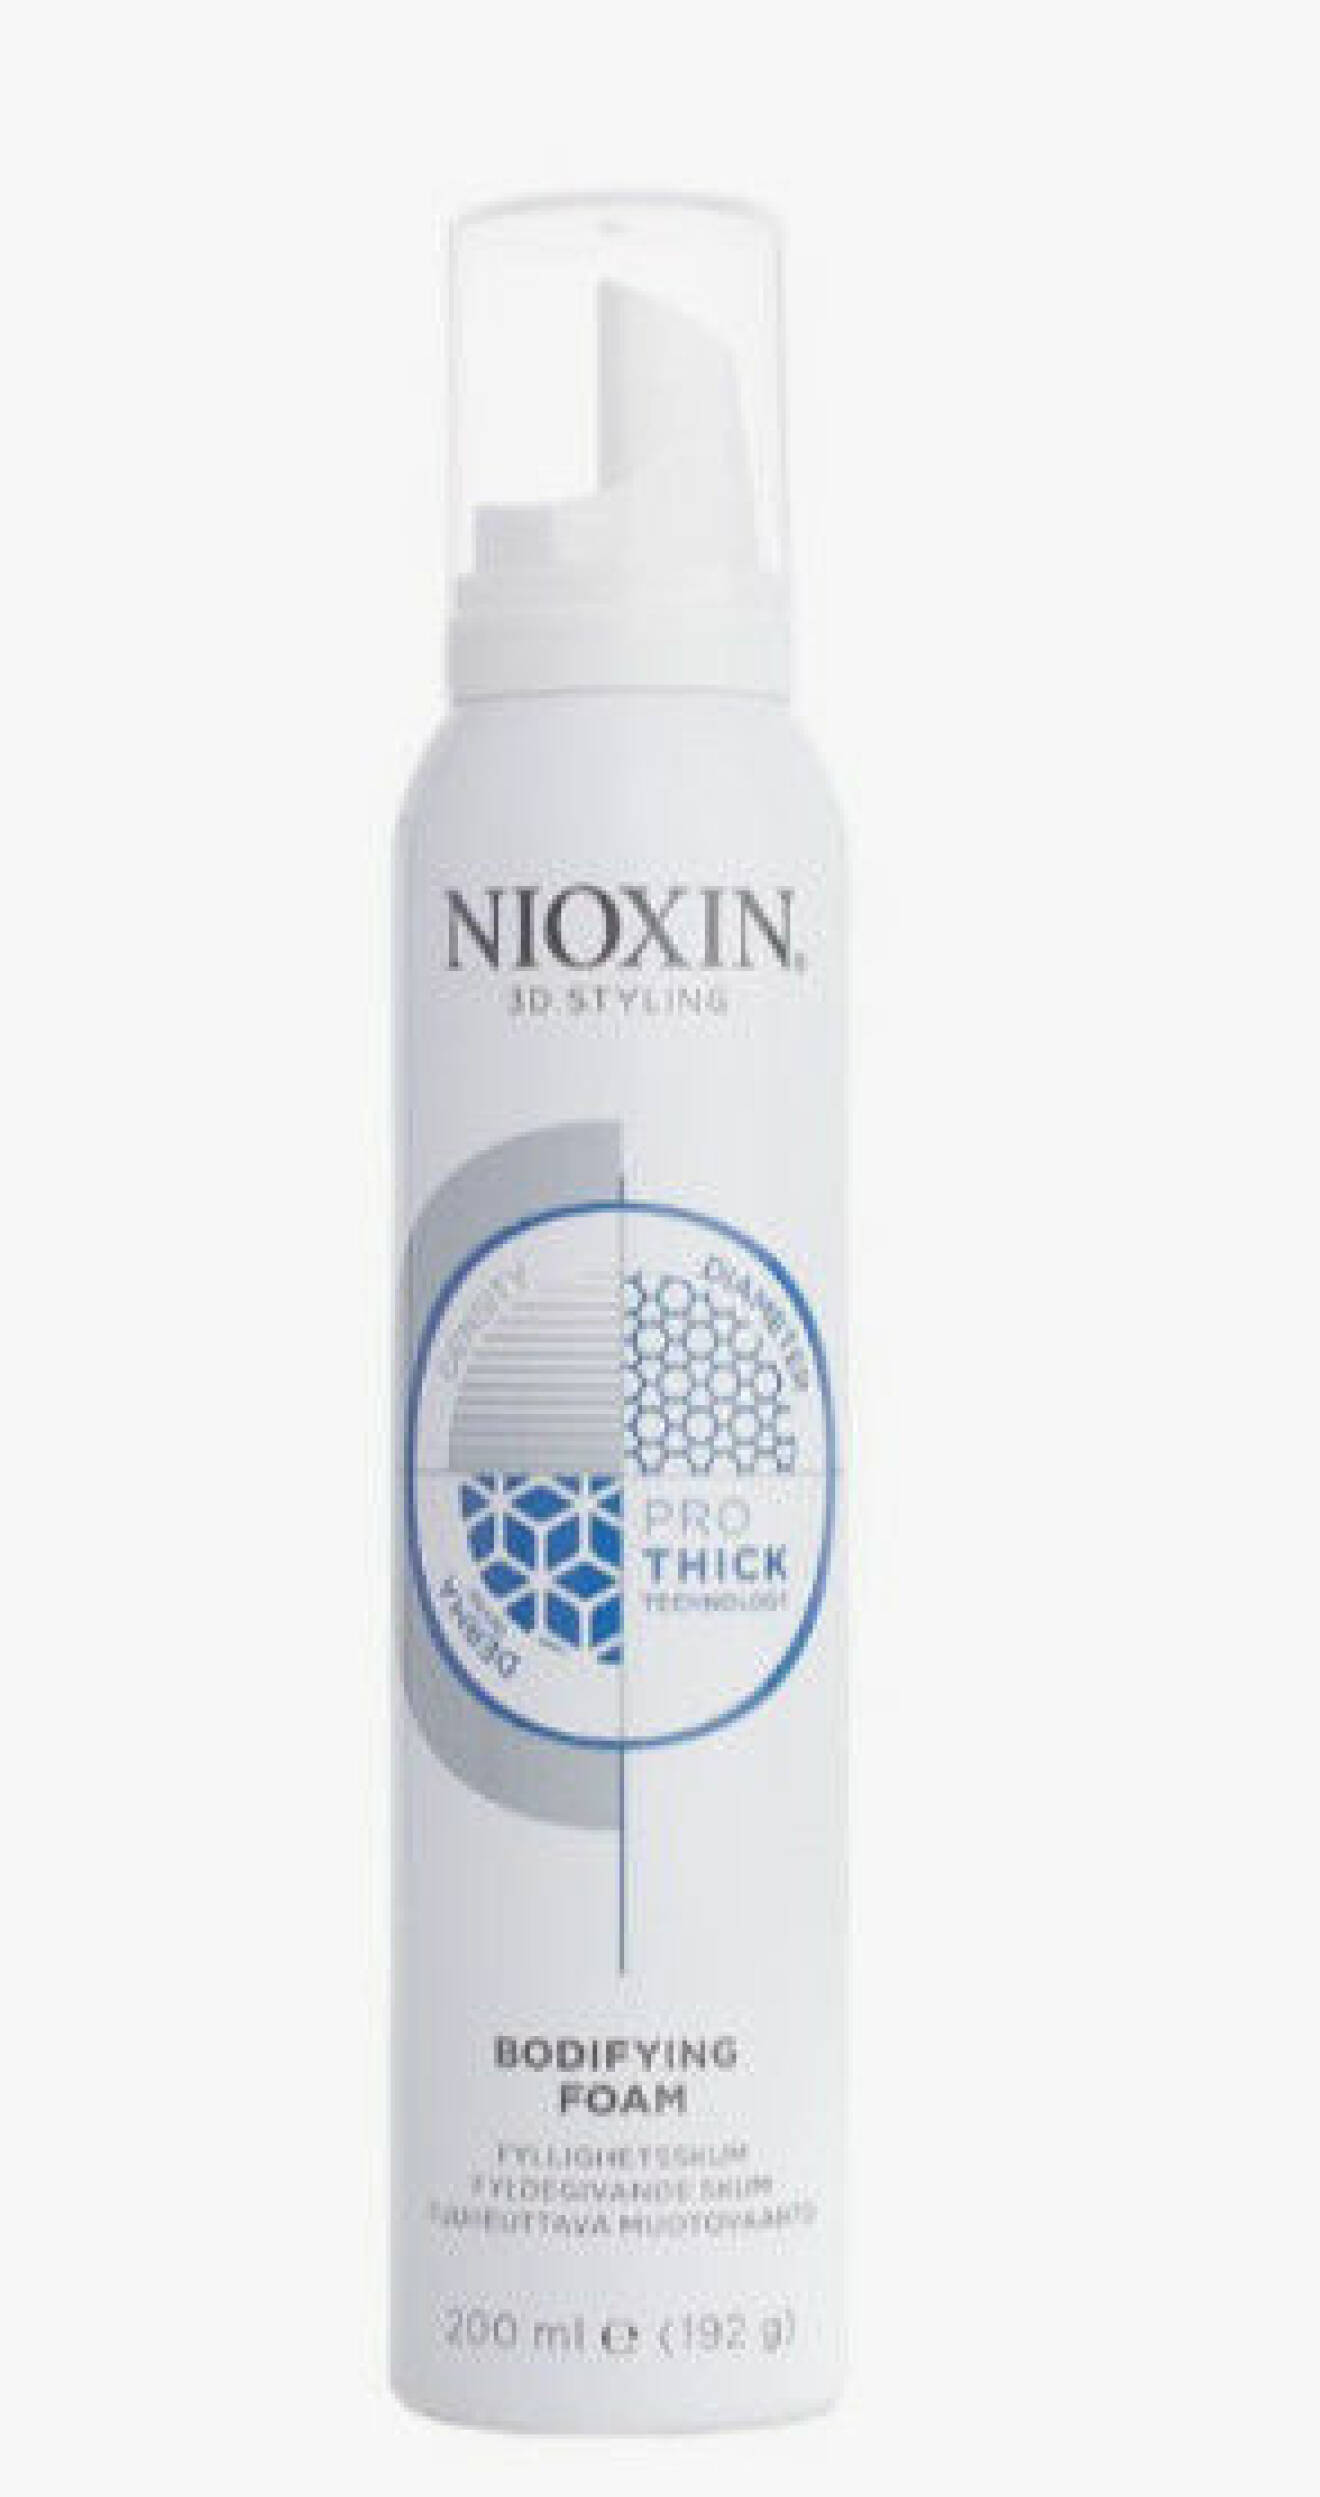 Nioxin Bodyfying Foam